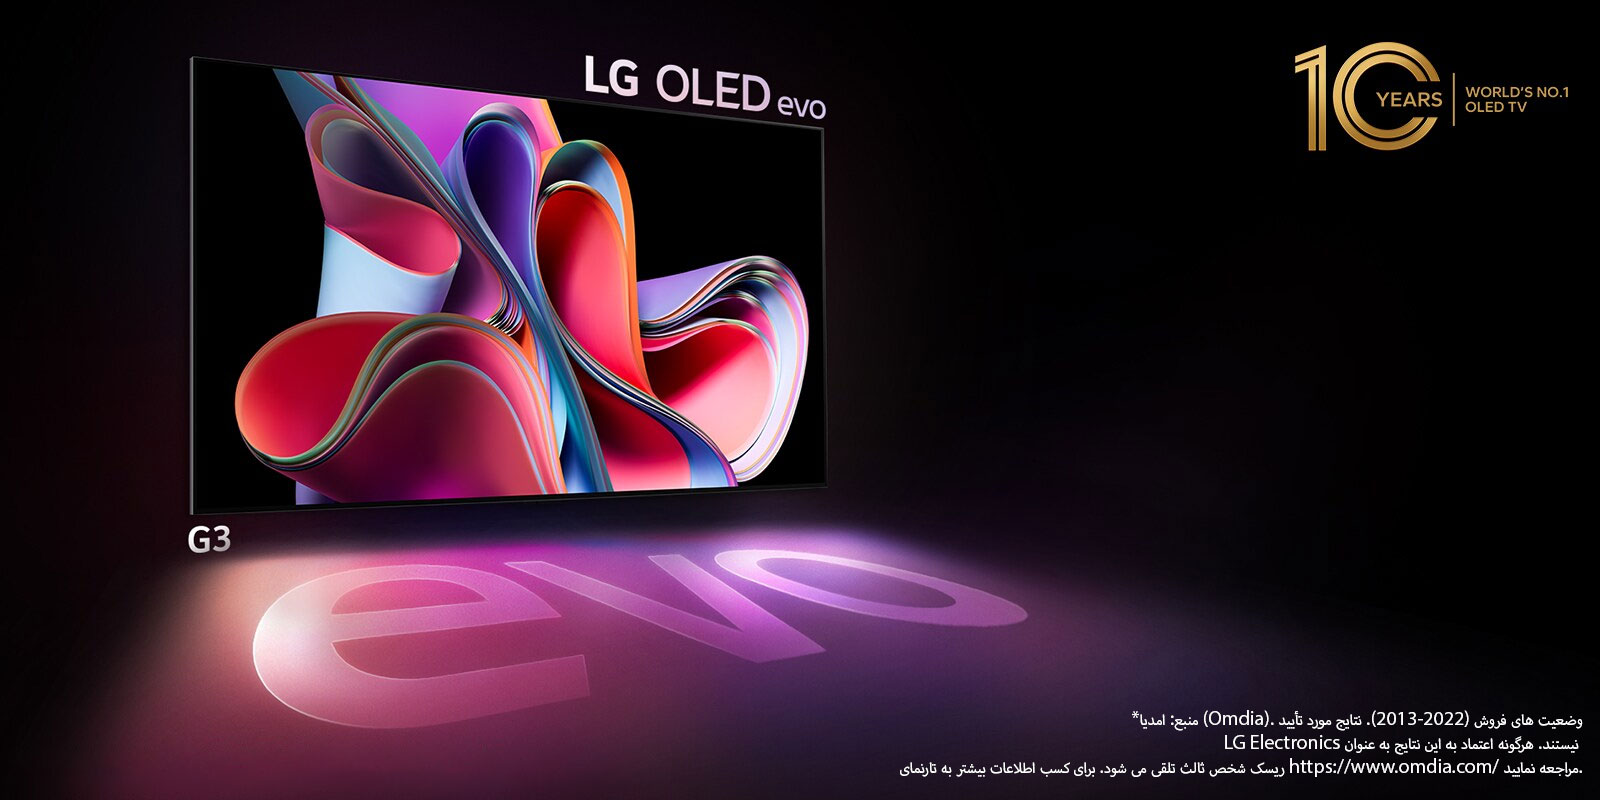 تصویری از LG OLED G3 در پس‌زمینه‌ای مشکی که یک اثر هنری انتزاعی صورتی و بنفش روشن را نشان می‌دهد. صفحه نمایش یک سایه رنگارنگ ایجاد می‌کند که کلمه «evo» را نشان می‌دهد. نشان «تلویزیون OLED برتر 10 ساله جهان» نیز در تصویر دیده می‌شود. 